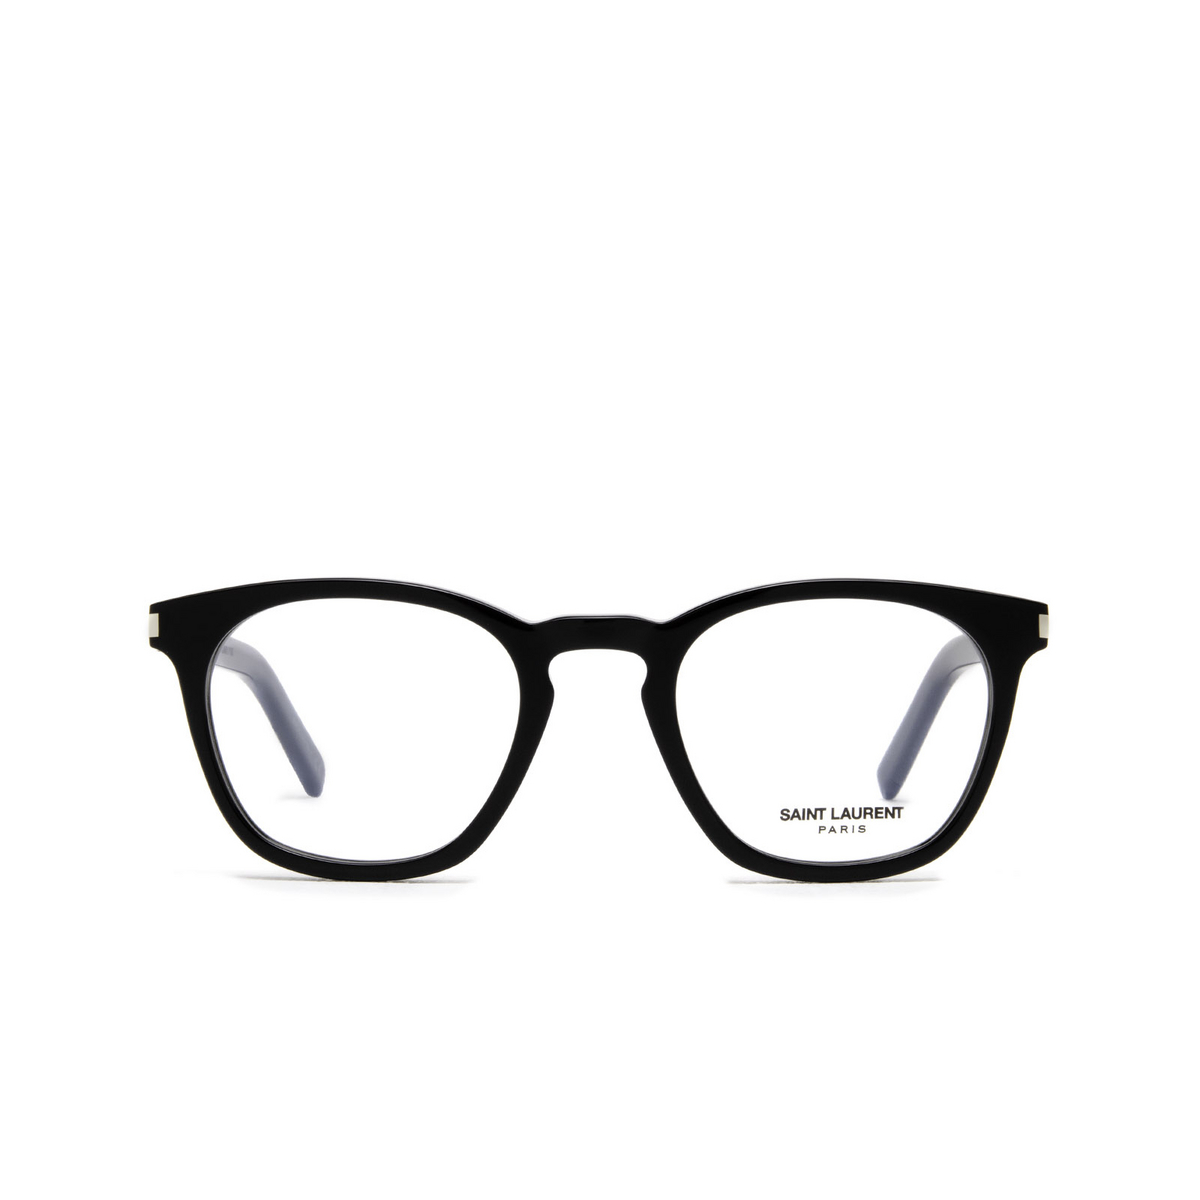 Saint Laurent® Square Eyeglasses: SL 28 OPT color 001 Black - front view